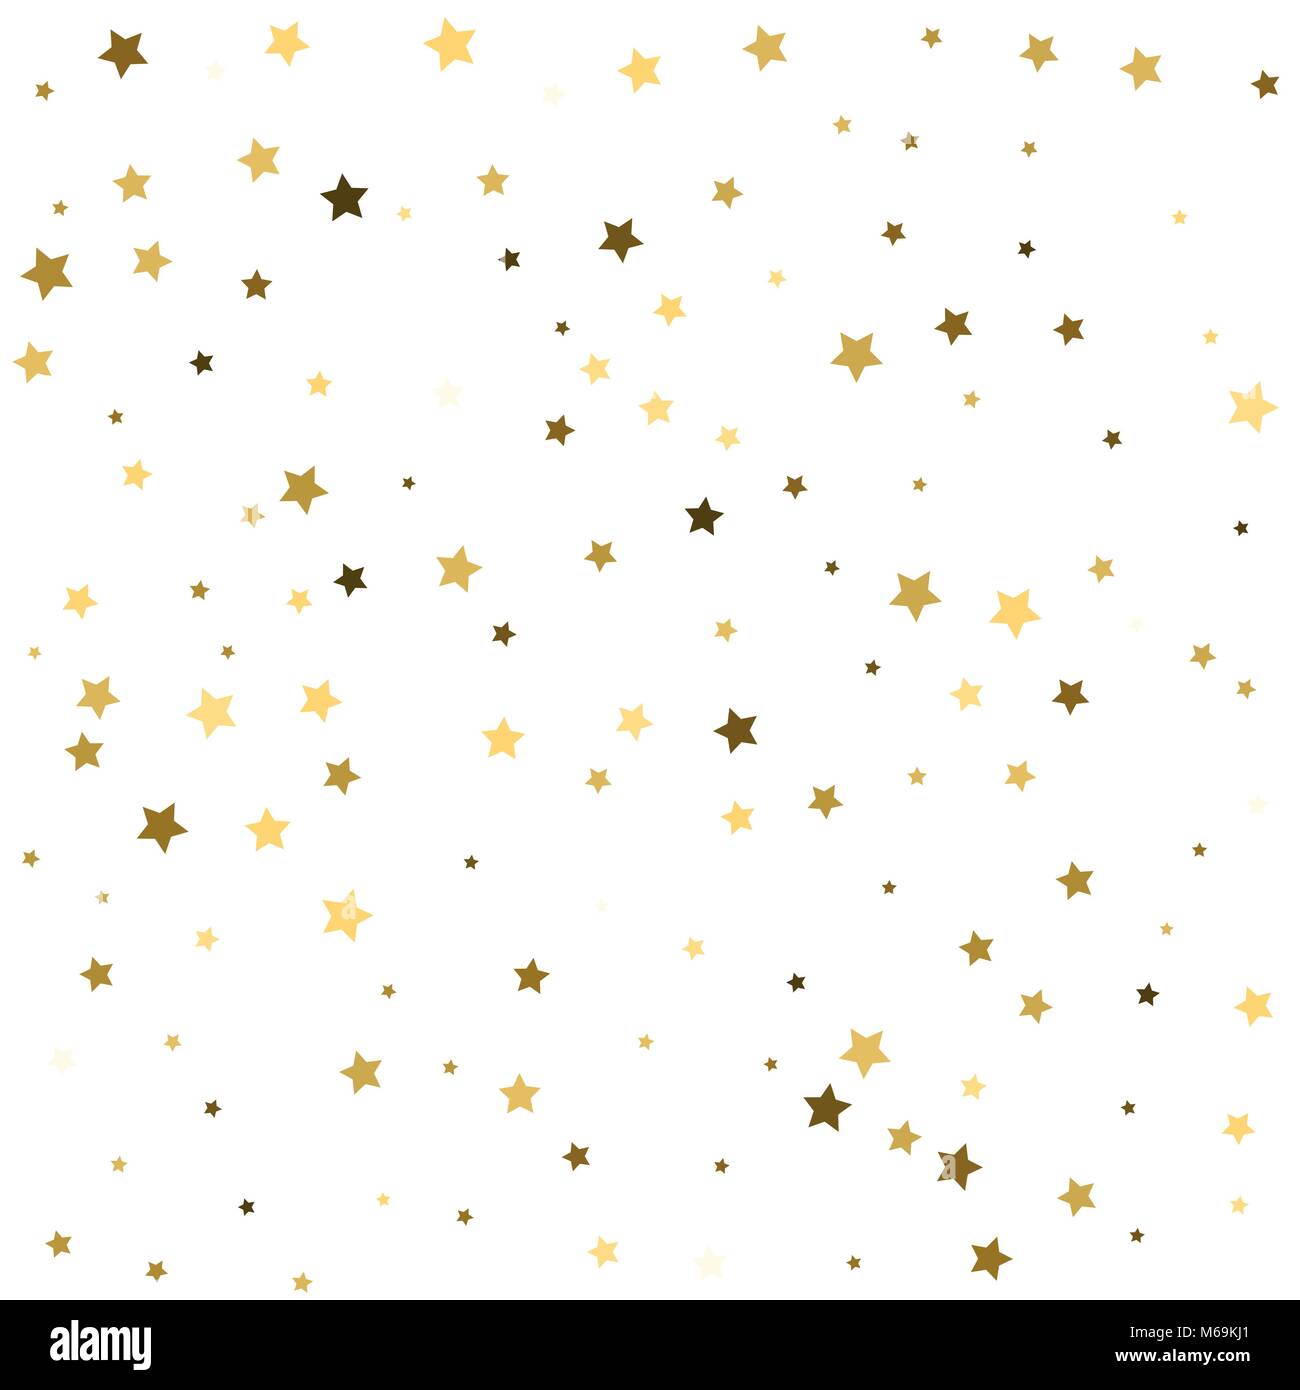 Abstrakte Muster von Random fallenden goldenen Sternen auf weißem Hintergrund. Glitter Muster für Banner, Grußkarten, Einladungen, Postkarten, Verpackungen aus Papier. V Stock Vektor